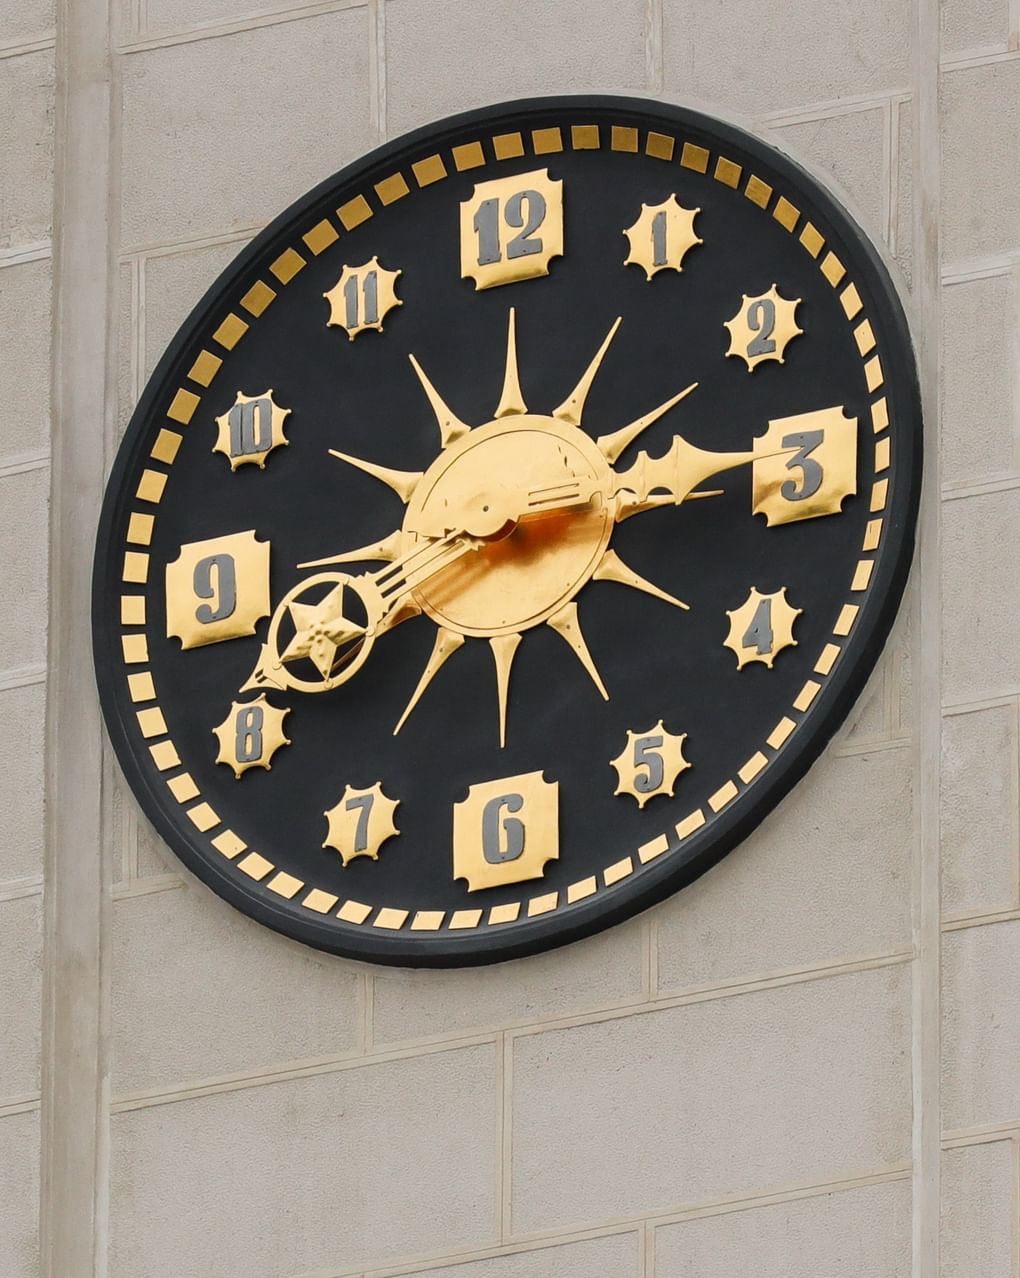 Часы на башне Северного речного вокзала после реставрации. Москва, 2020 год. Фотография: Михаил Джапаридзе / ТАСС